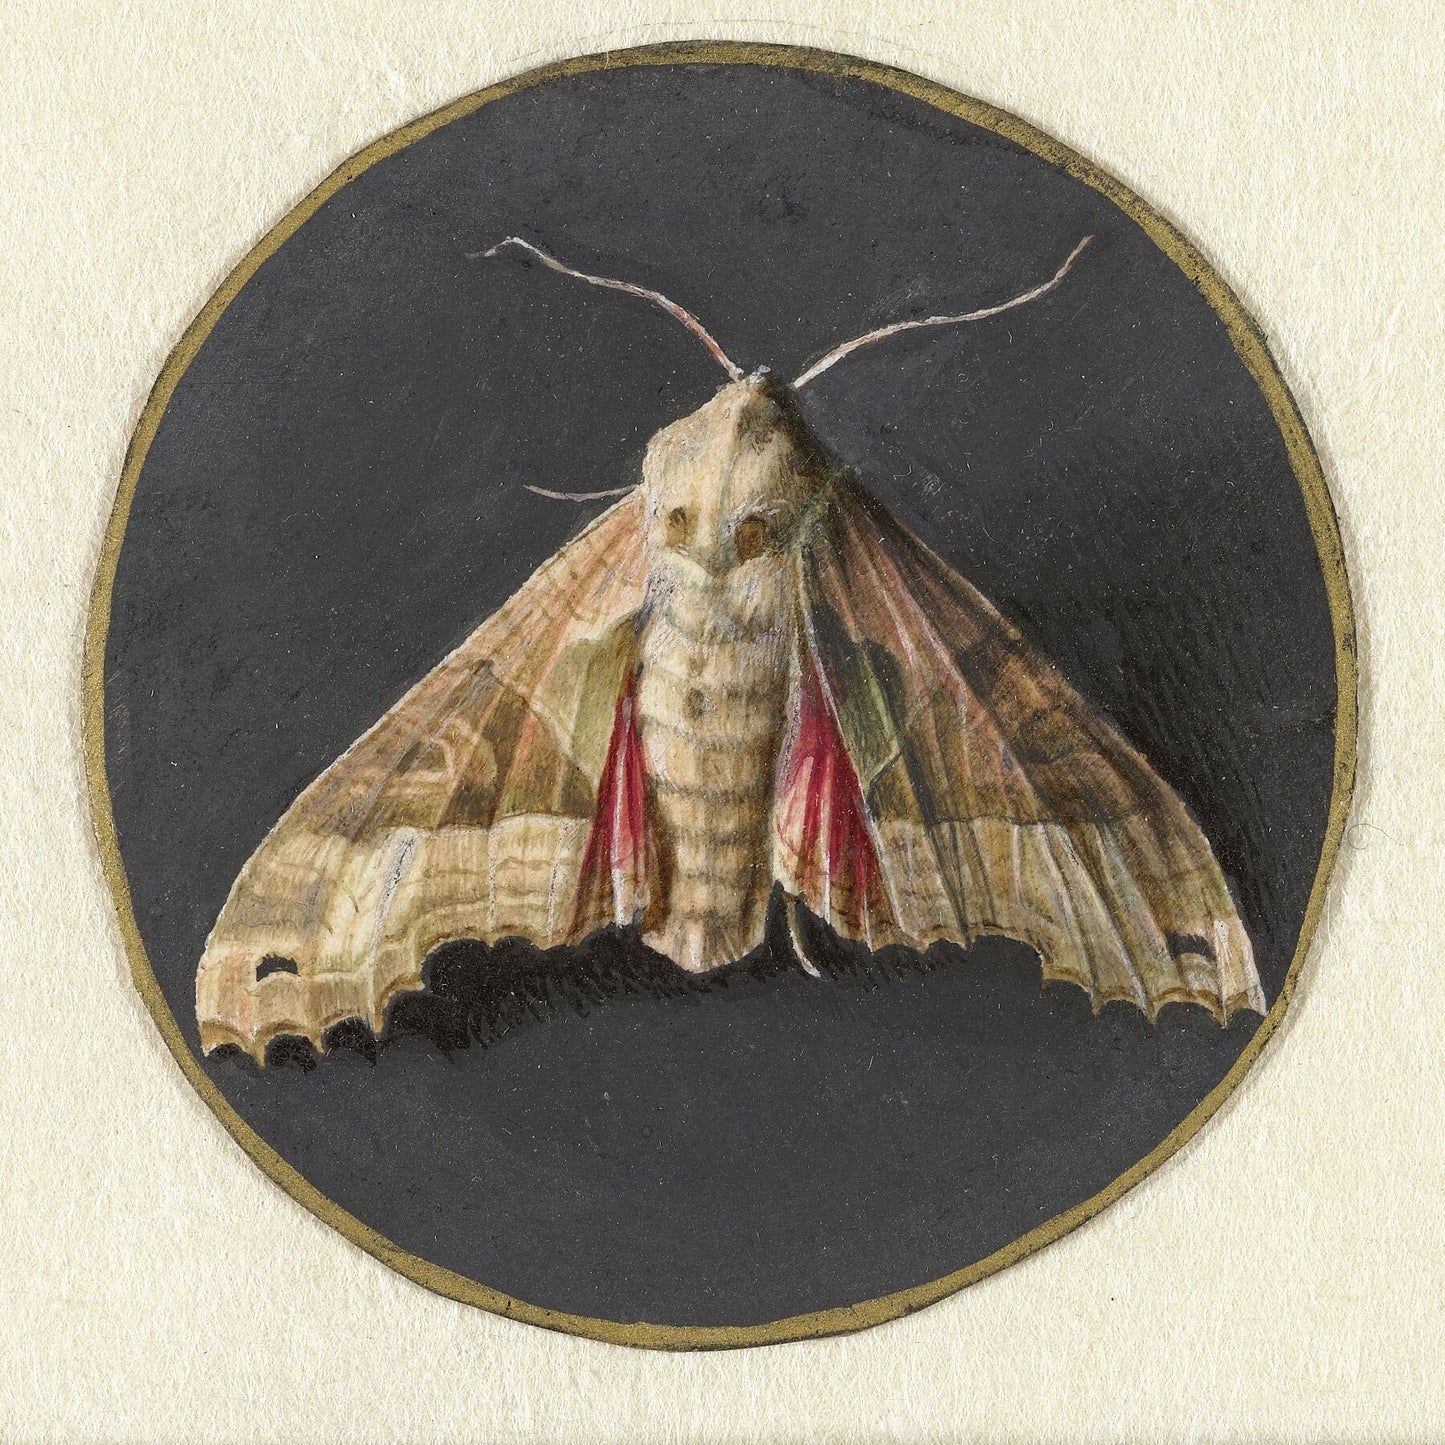 Little Owl or Moth by Jan Augustin van der Goes - 1690 - 1700